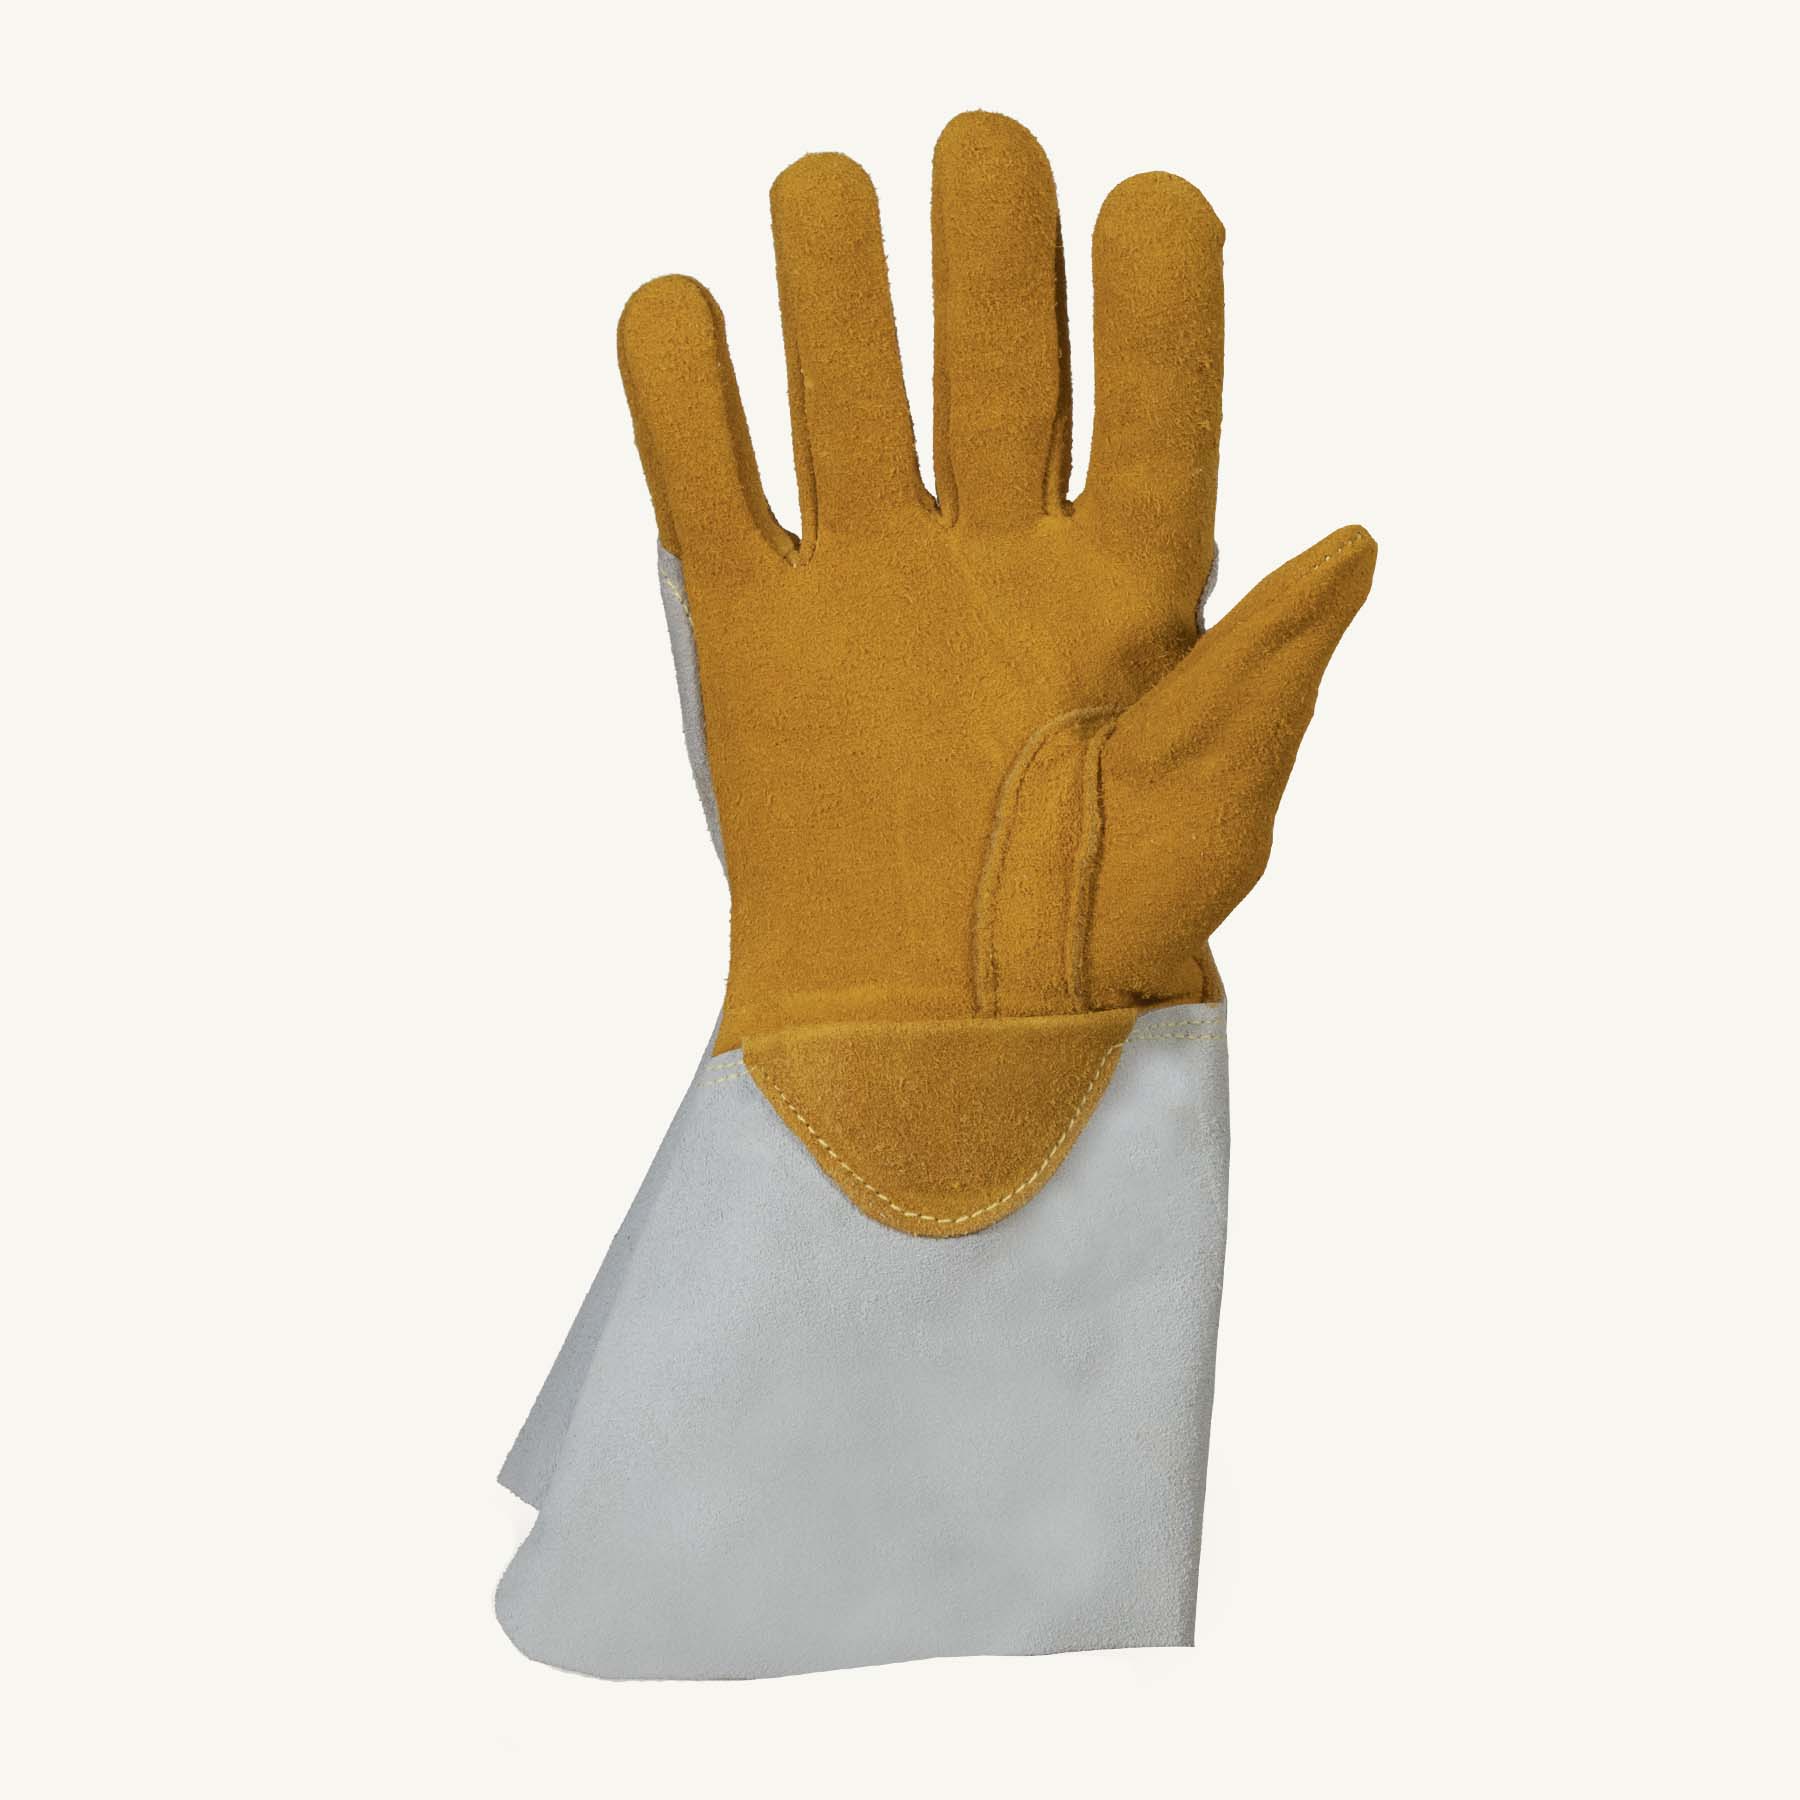 Superior Glove® Endura® 335DBP Welding Gloves 